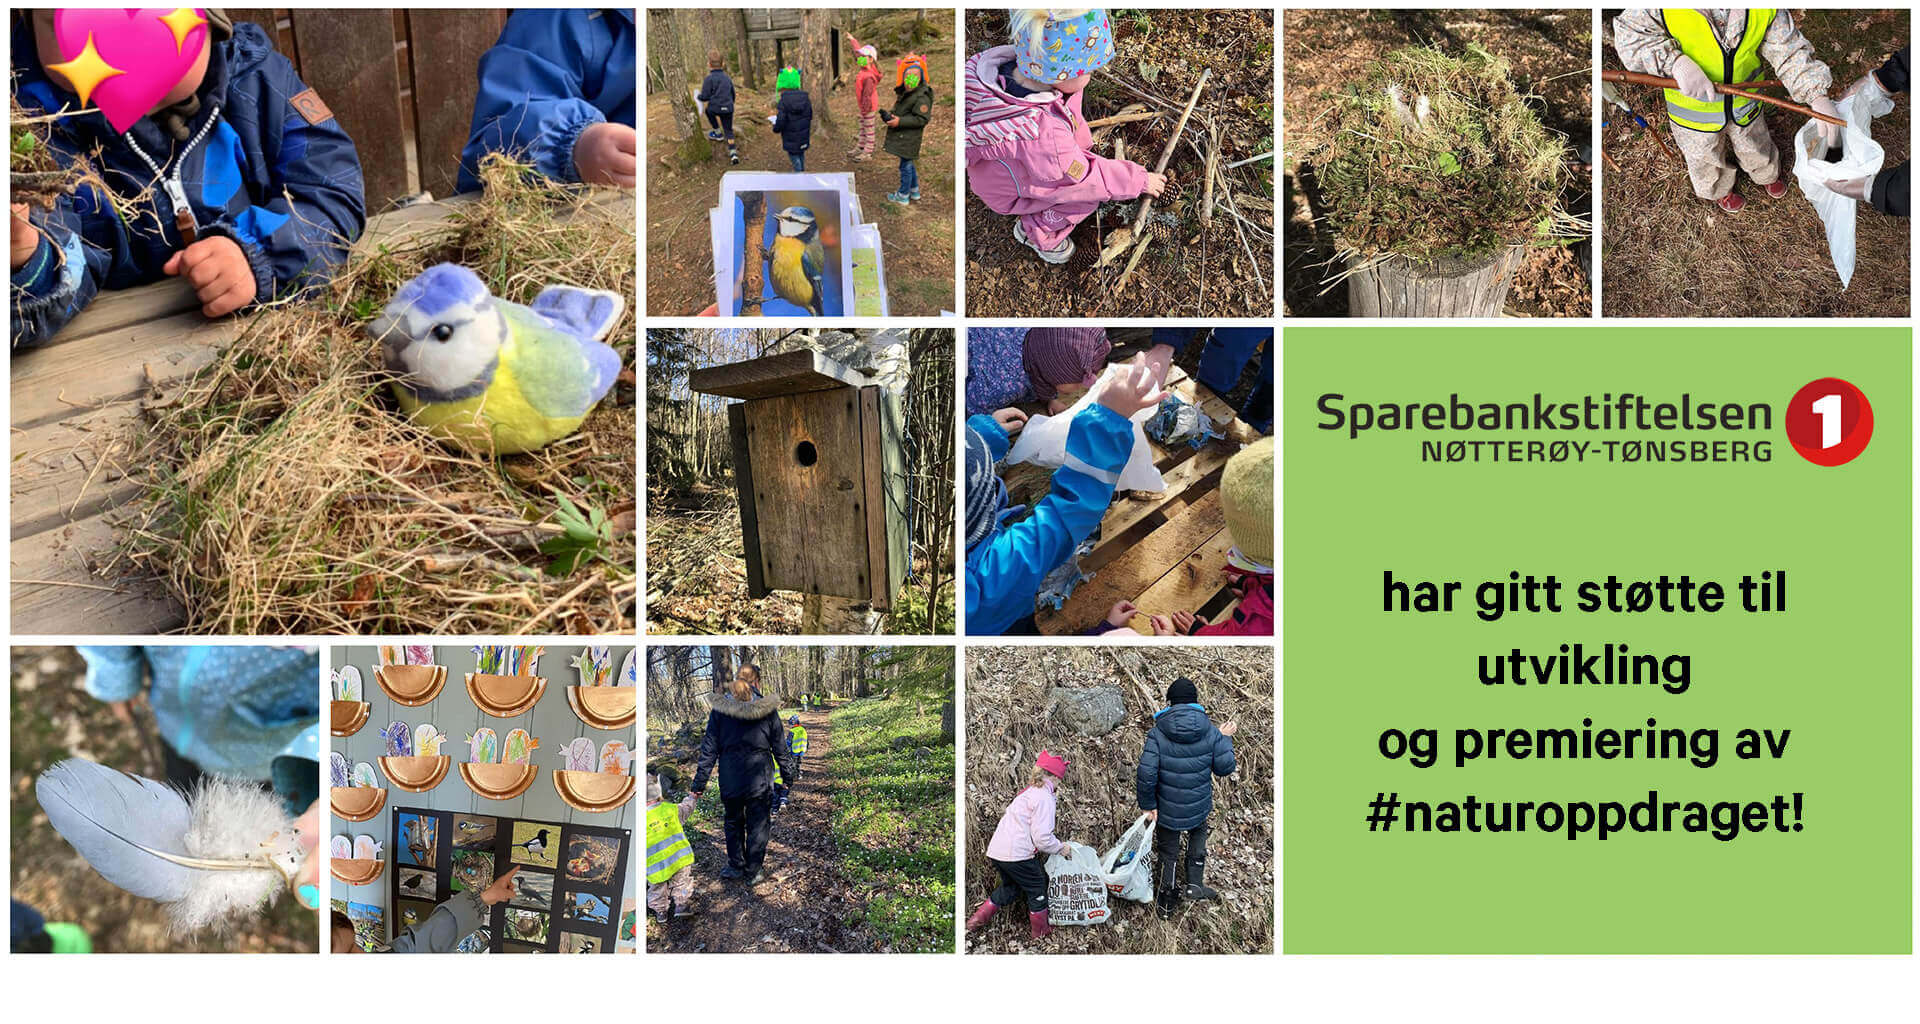 Bilder fra #naturoppdraget som har fått støtte av Sparebankstiftelsen Nøtterøy-Tønsberg